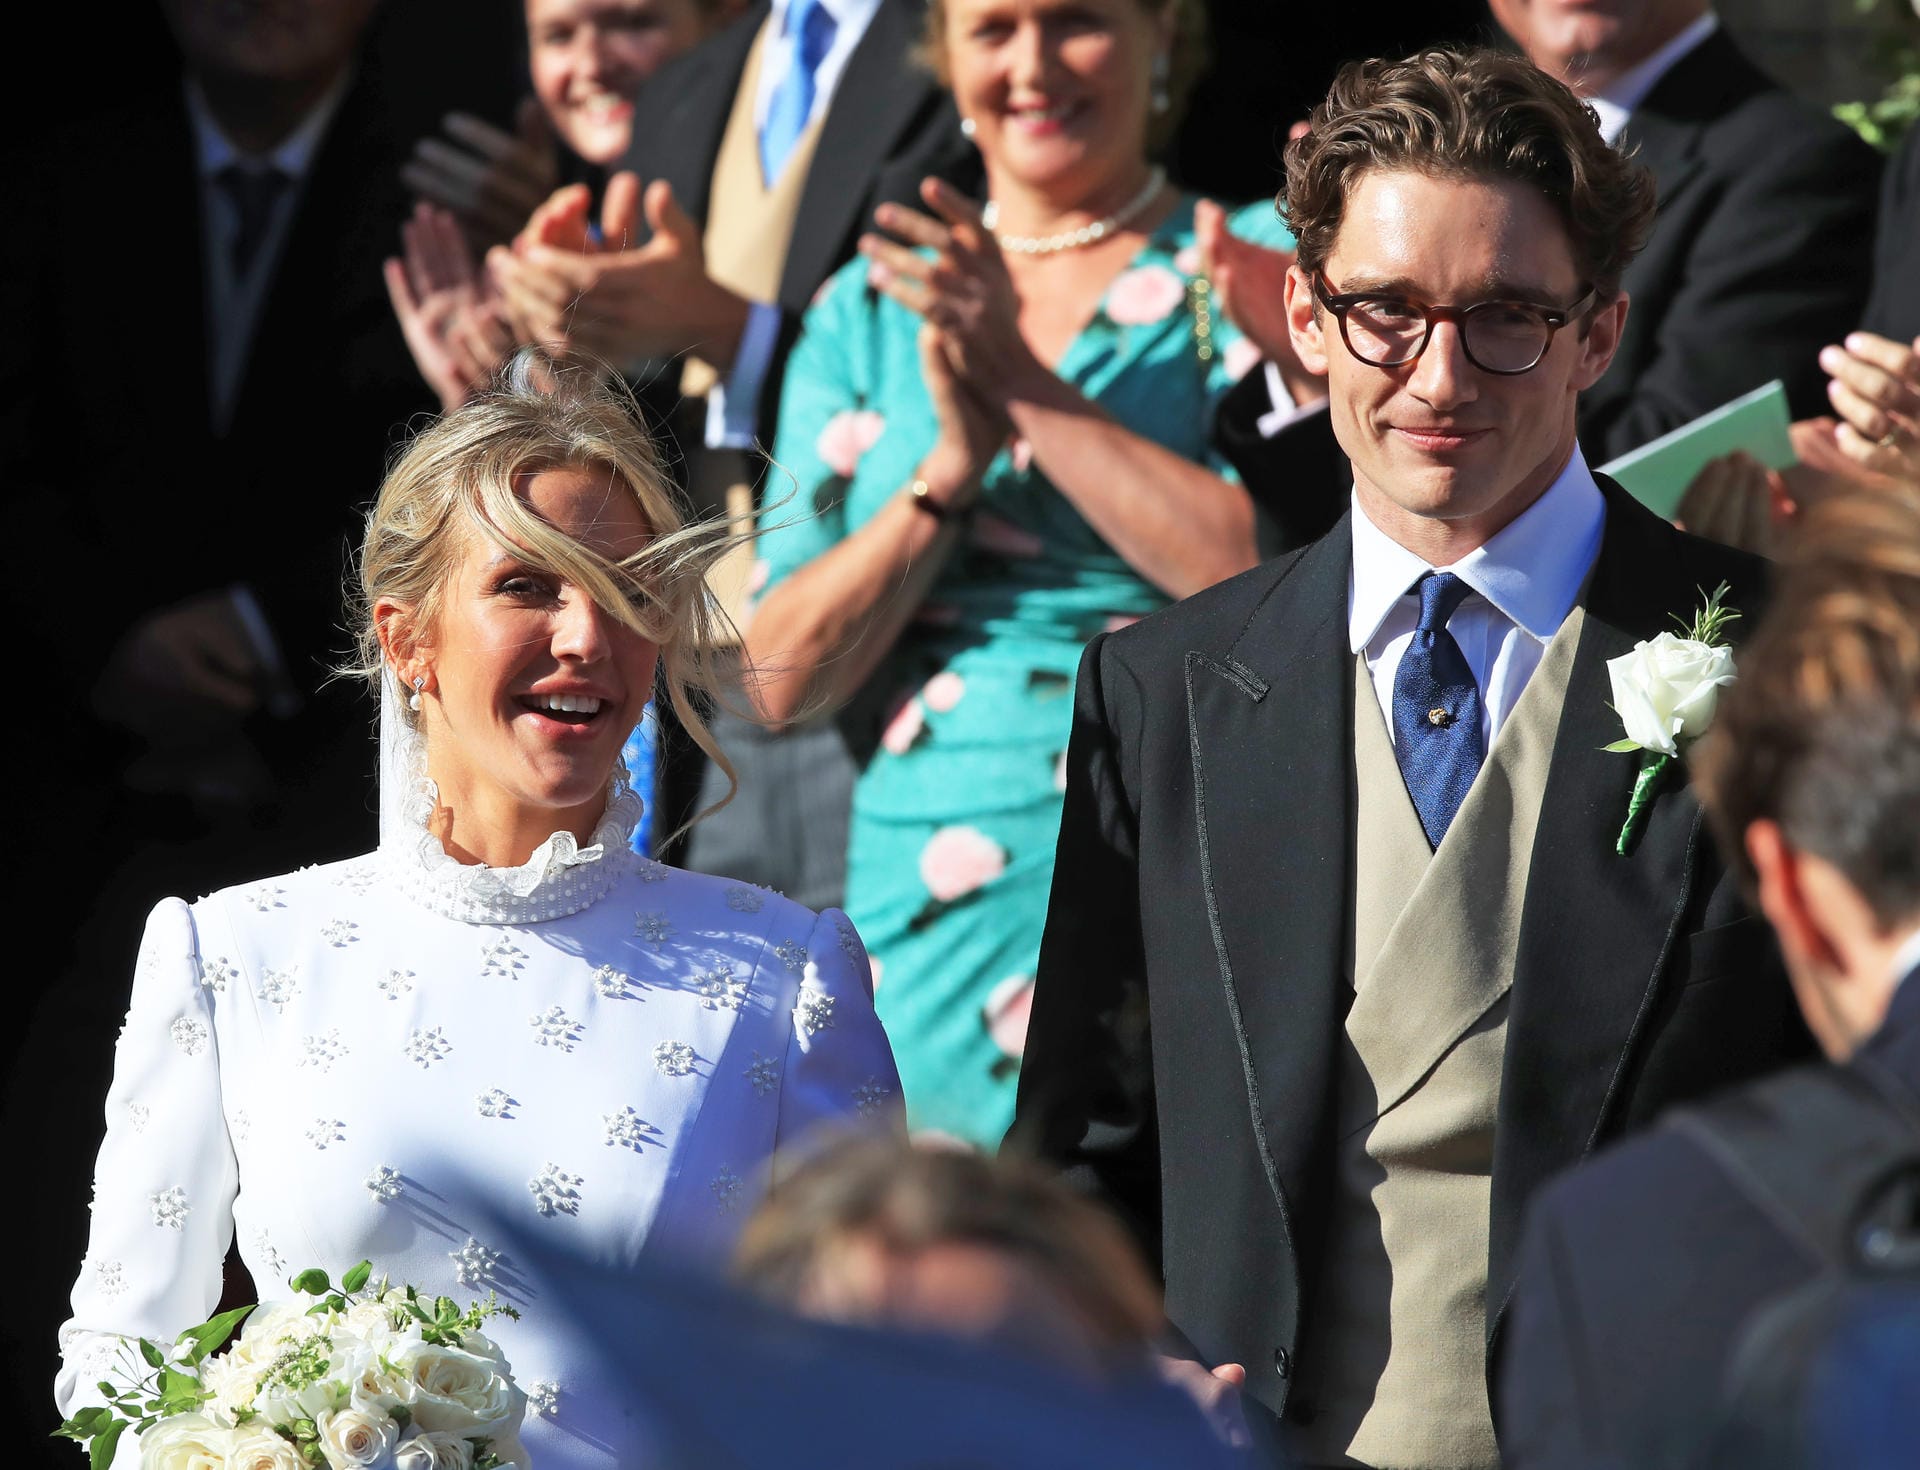 Am Samstag heiratete die 32-Jährige nach zweieinhalb Jahren Beziehung ihren Freund Caspar Jopling.